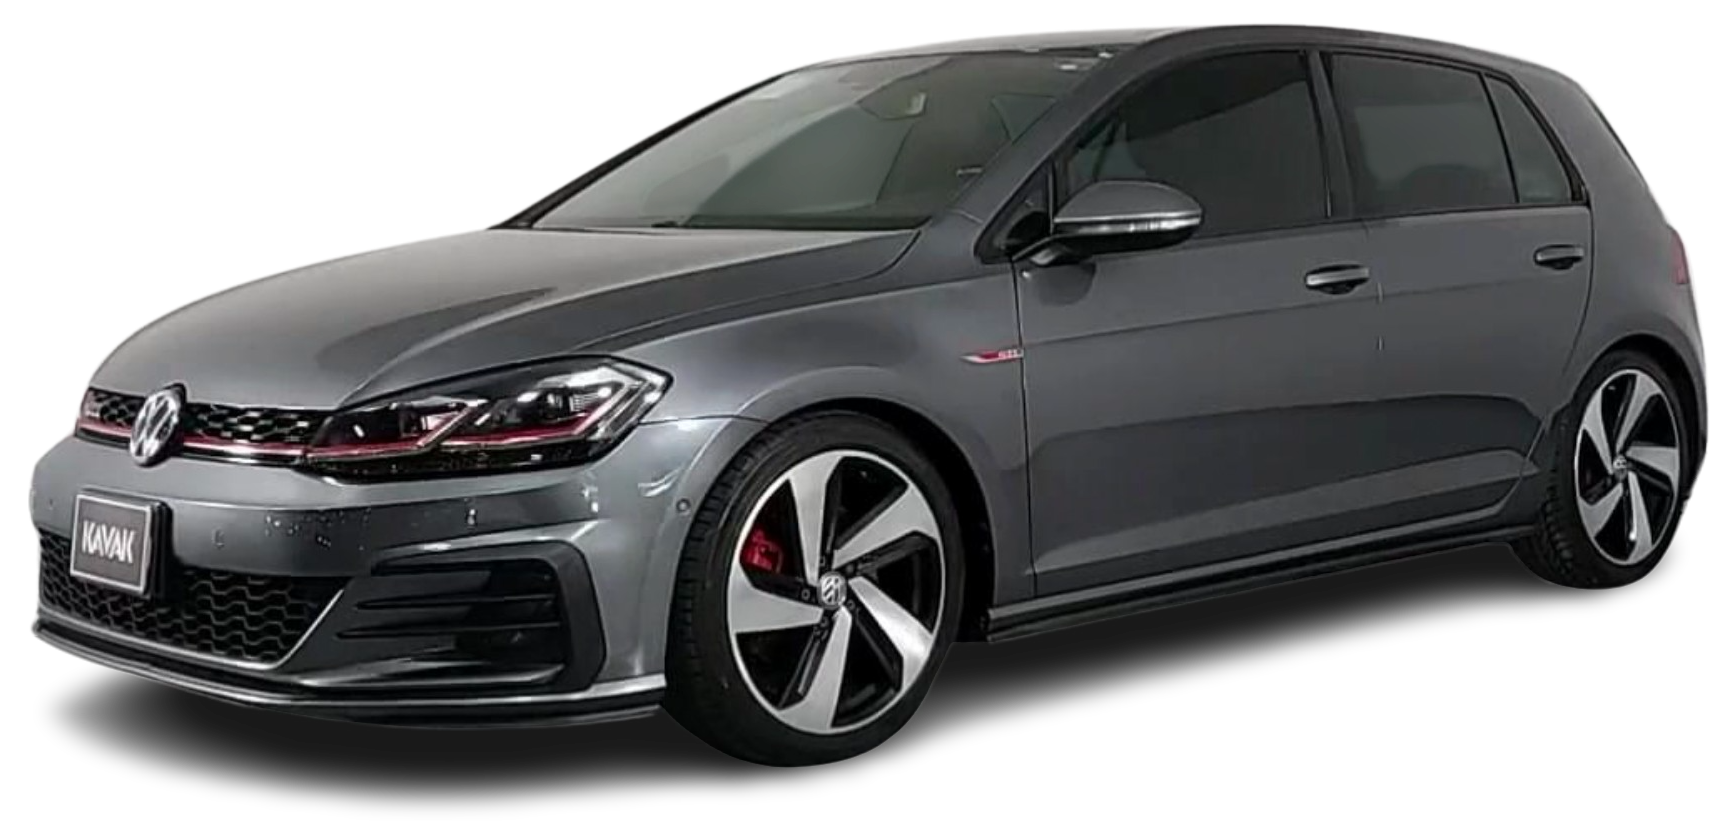 Volkswagen GTI Golf A7 Hatchback 2022 2021 2020 2019 2018 2017 2016 2015